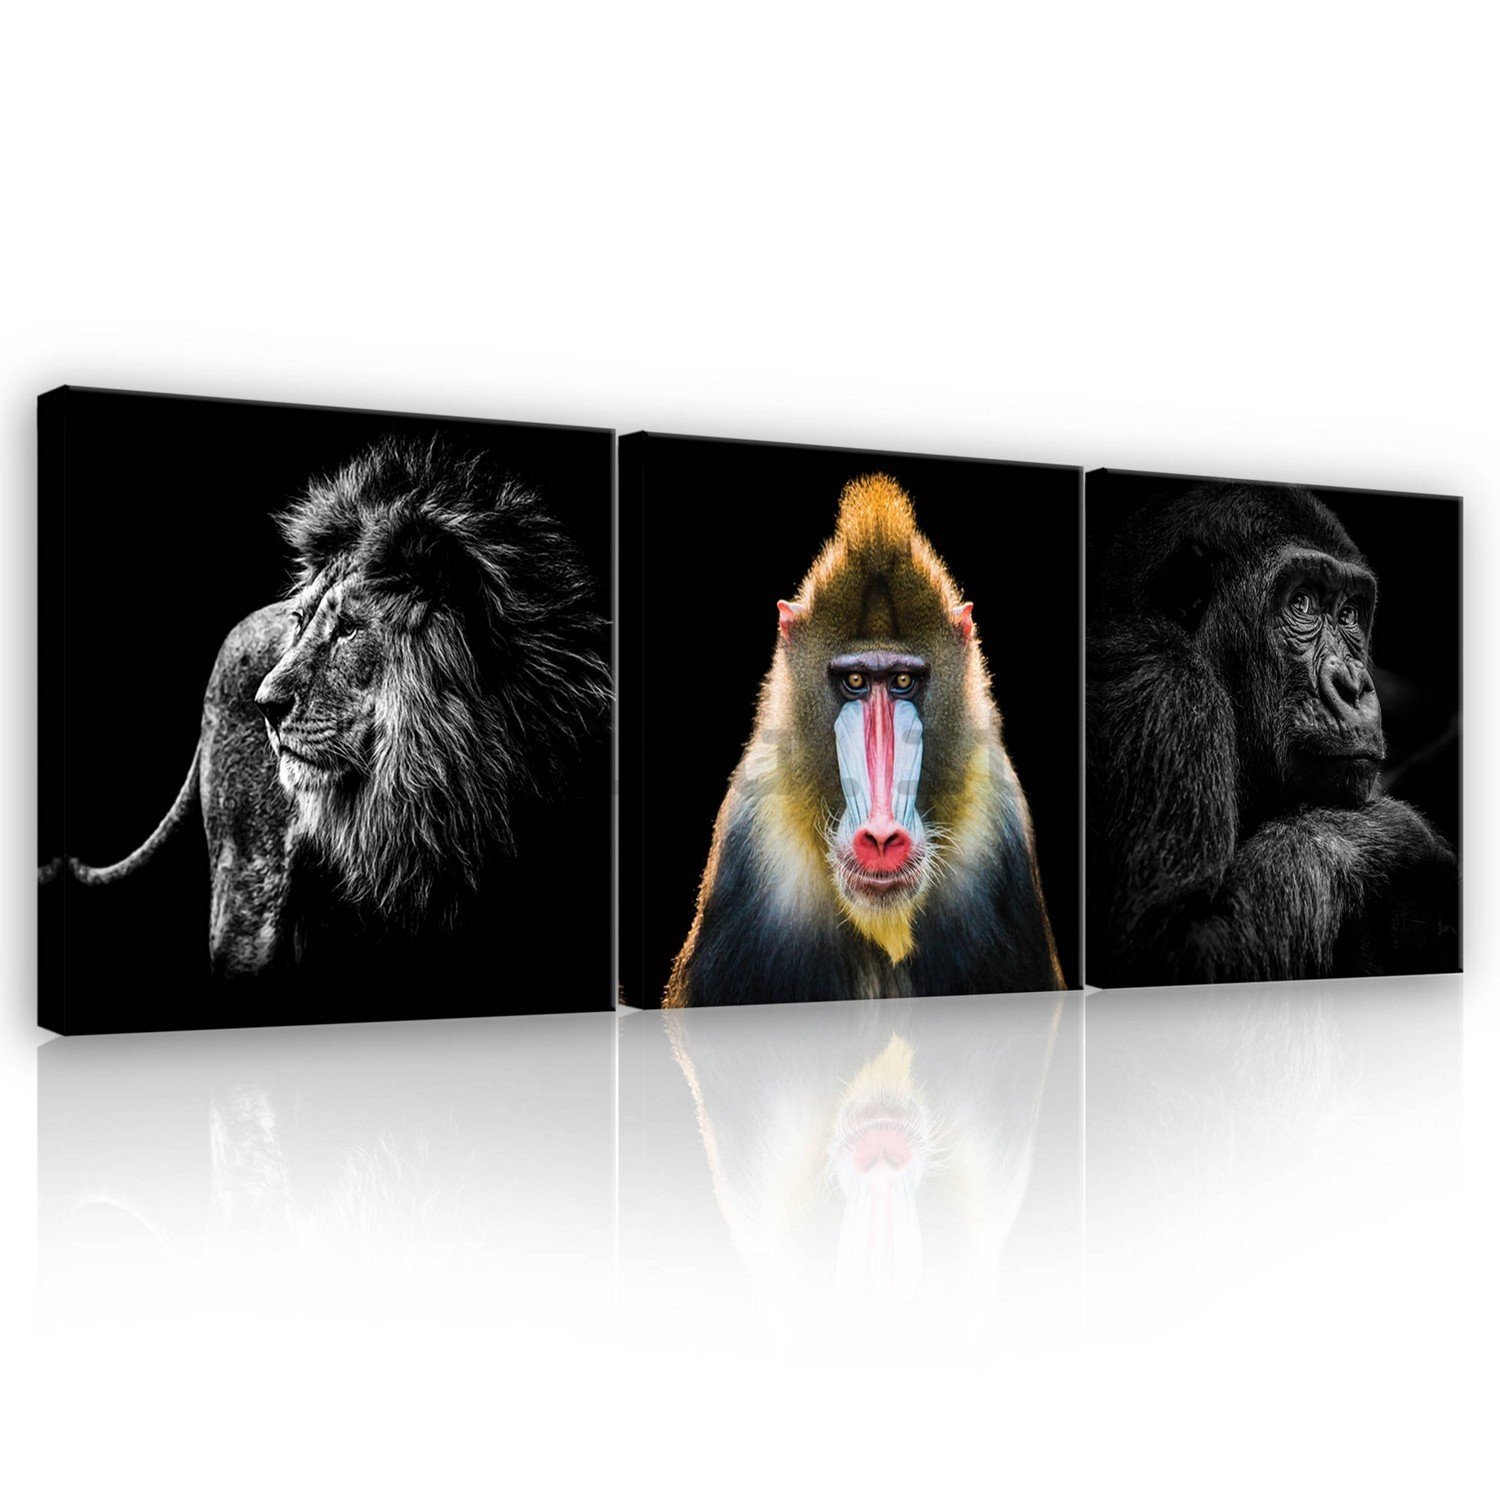 Quadro su tela: Il leone, mandrillo e gorilla - set 3pz 25x25cm